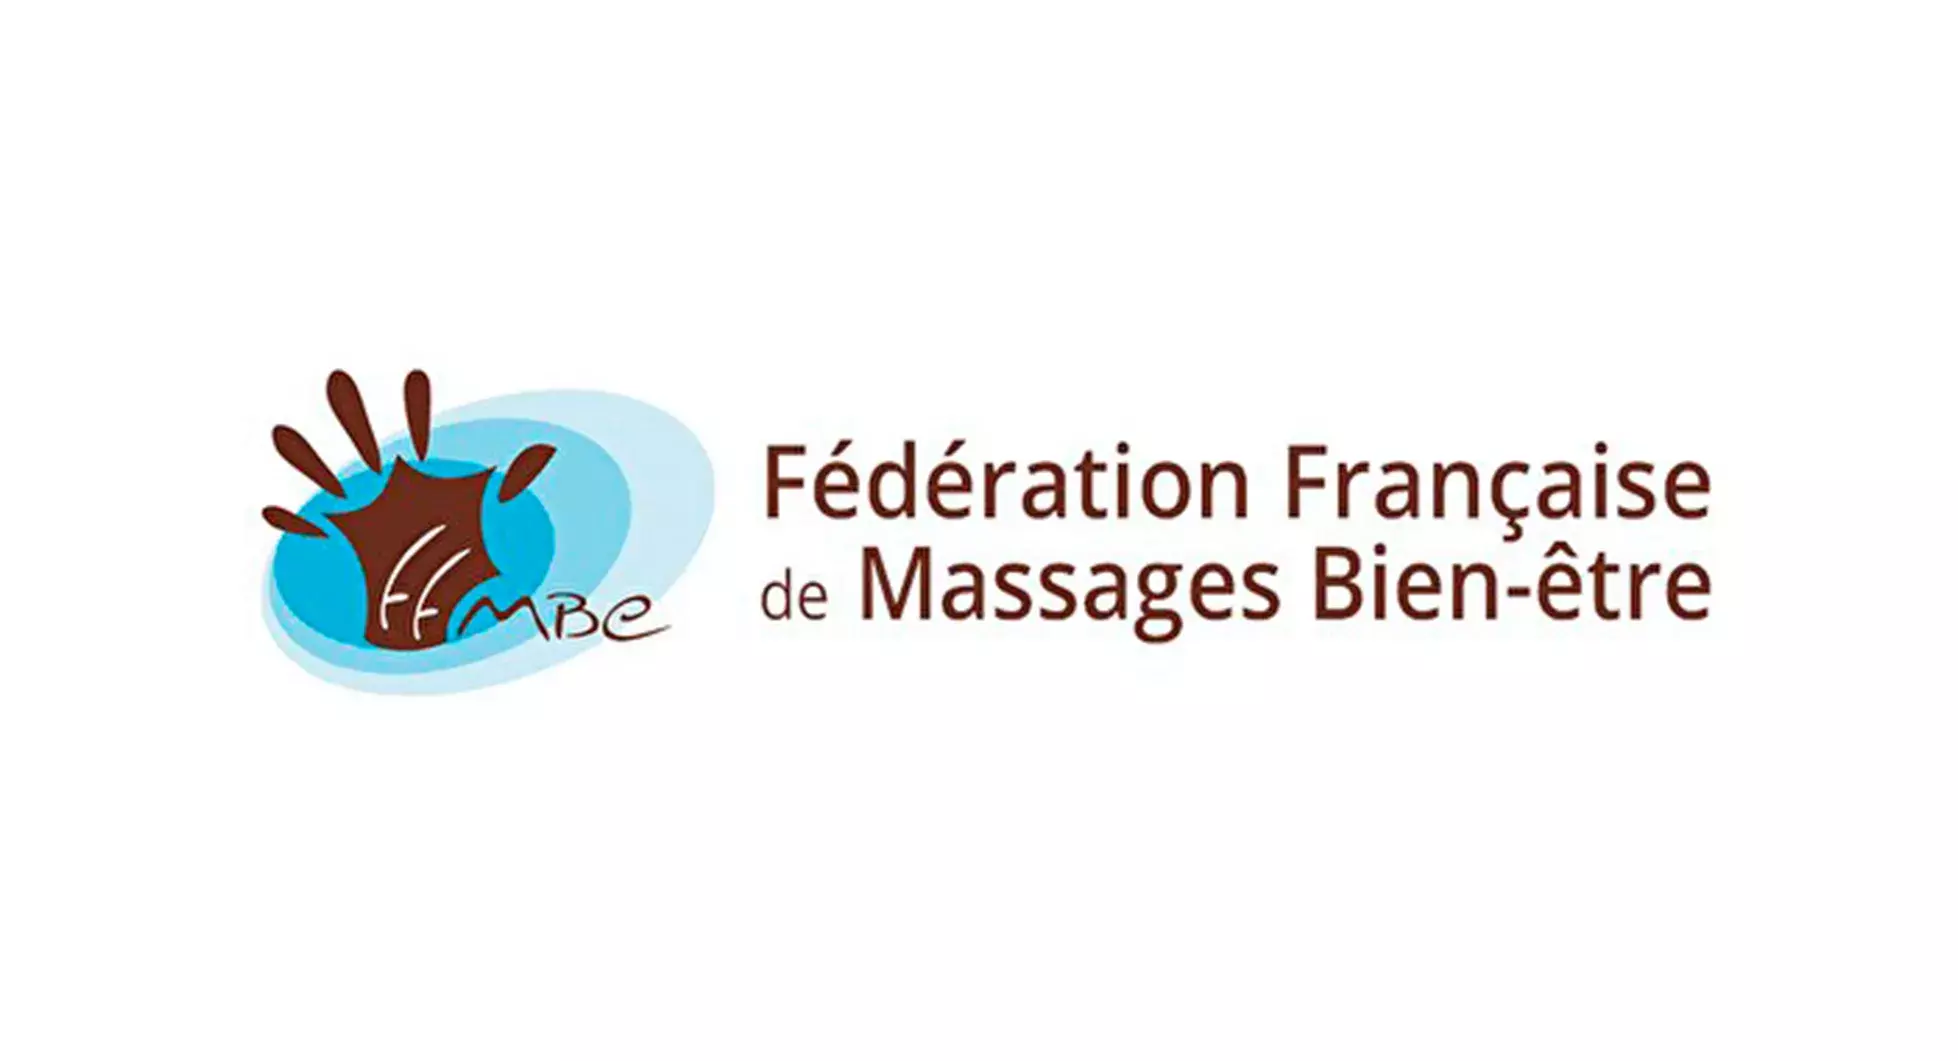 Fédaration Francaise de Massages Bien-etre logo